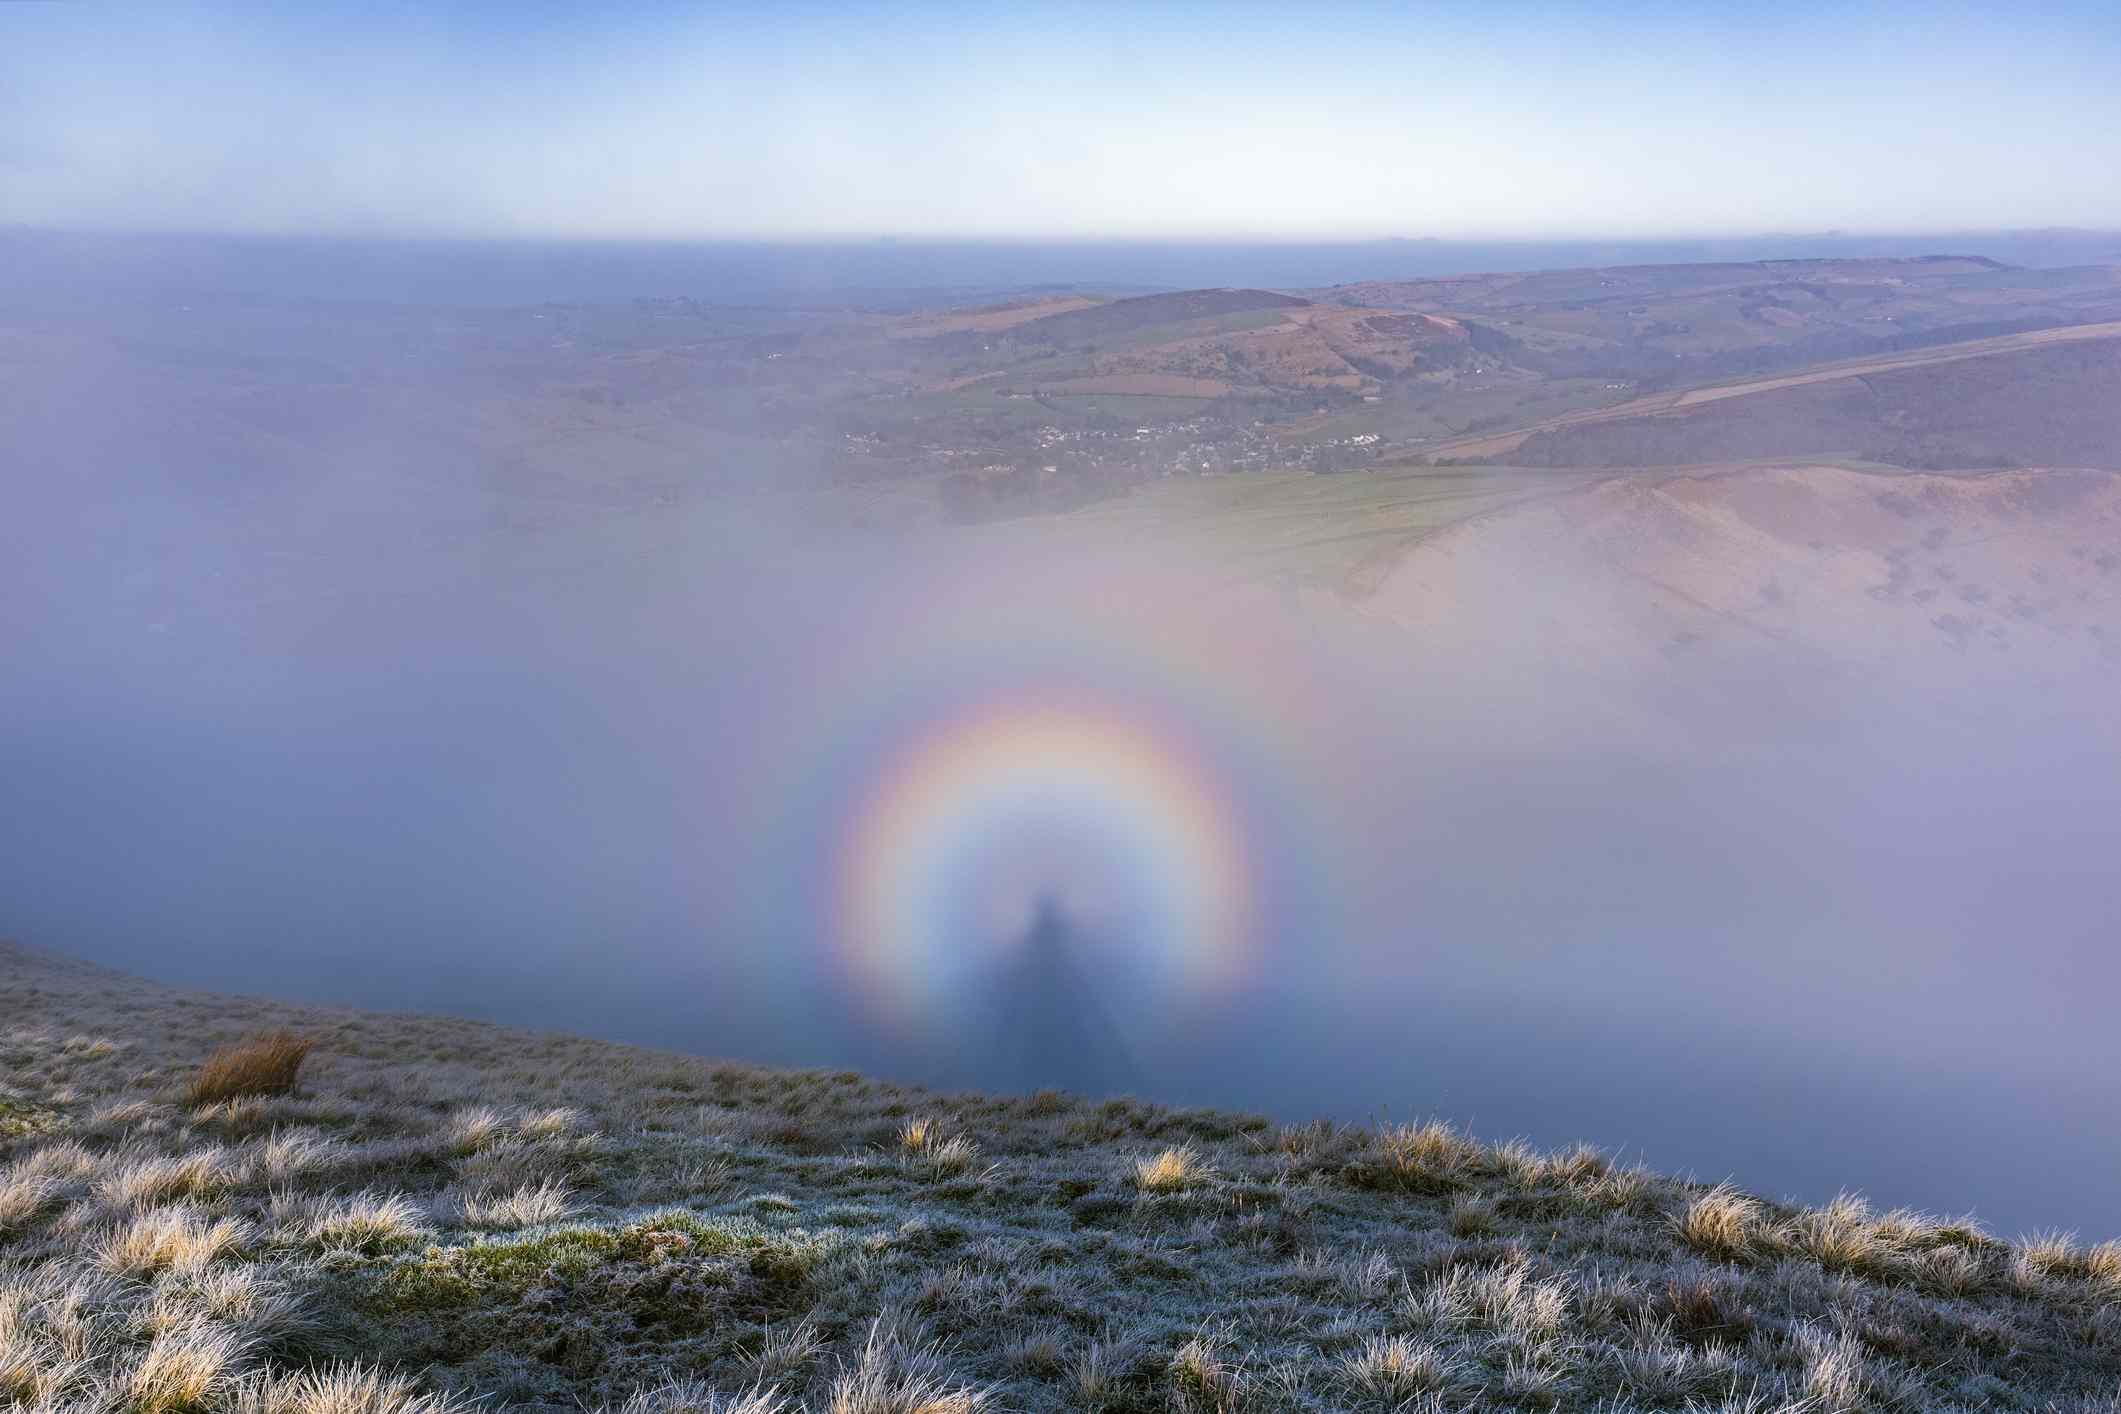 Una sombra ampliada de un observador proyectada sobre las nubes frente al sol, conocida como espectro de Brocken, parece una persona rodeada de un arco iris con montañas y un cielo azul/blanco encima